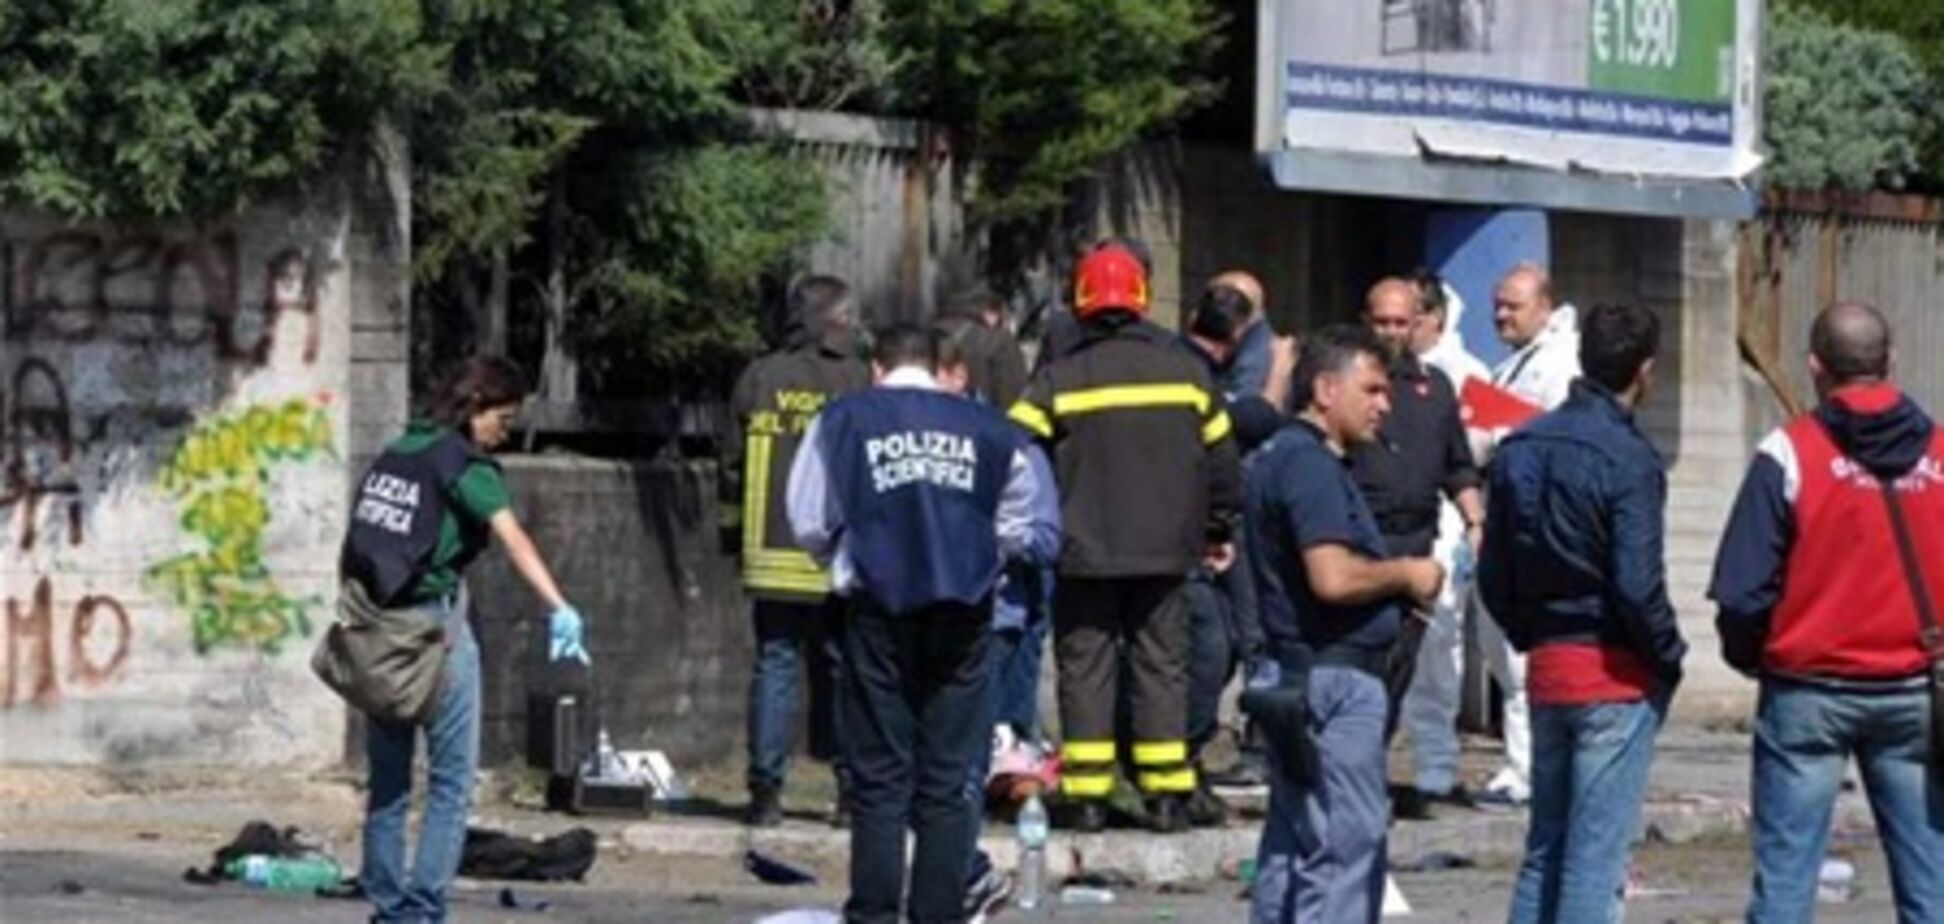 Итальянские власти резко осудили взрывы в Бриндизи